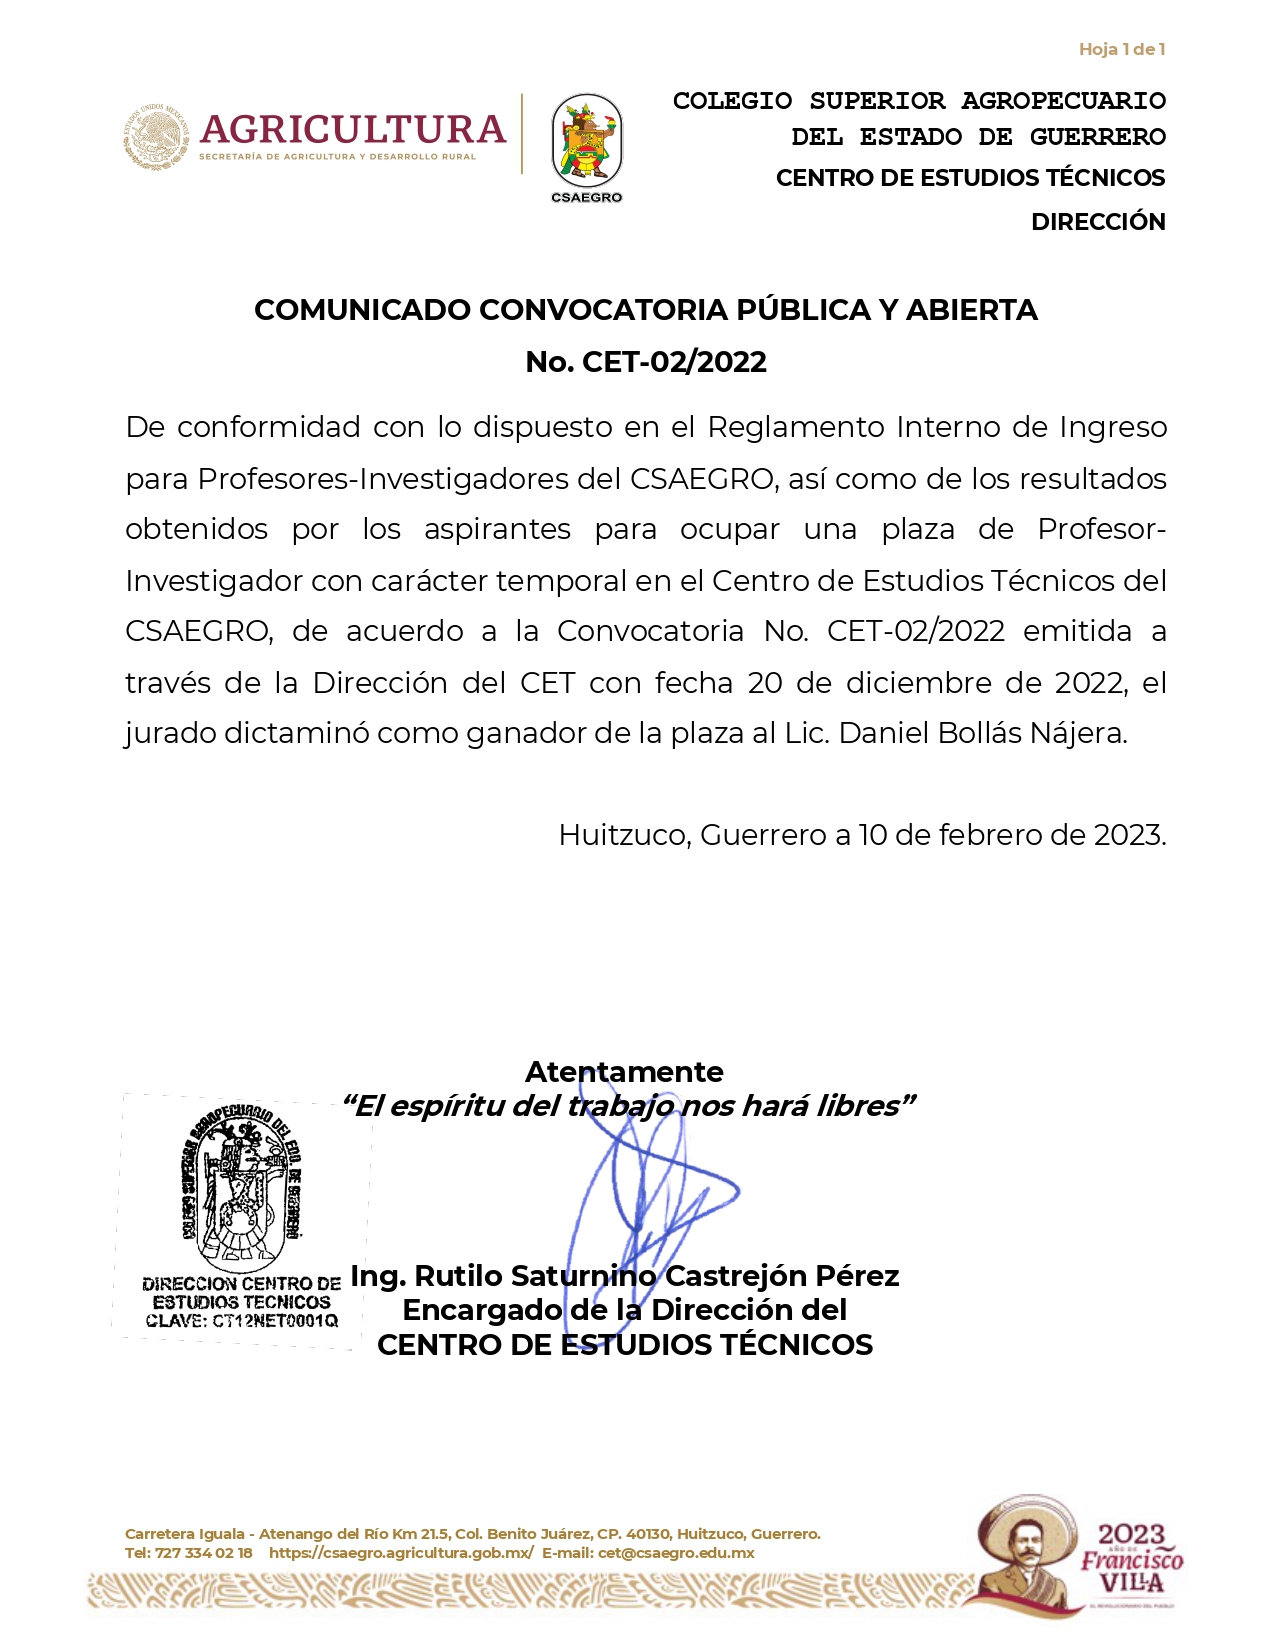 COMUNICADO CONVOCATORIA PÚBLICA Y ABIERTA No. CET-02/2022